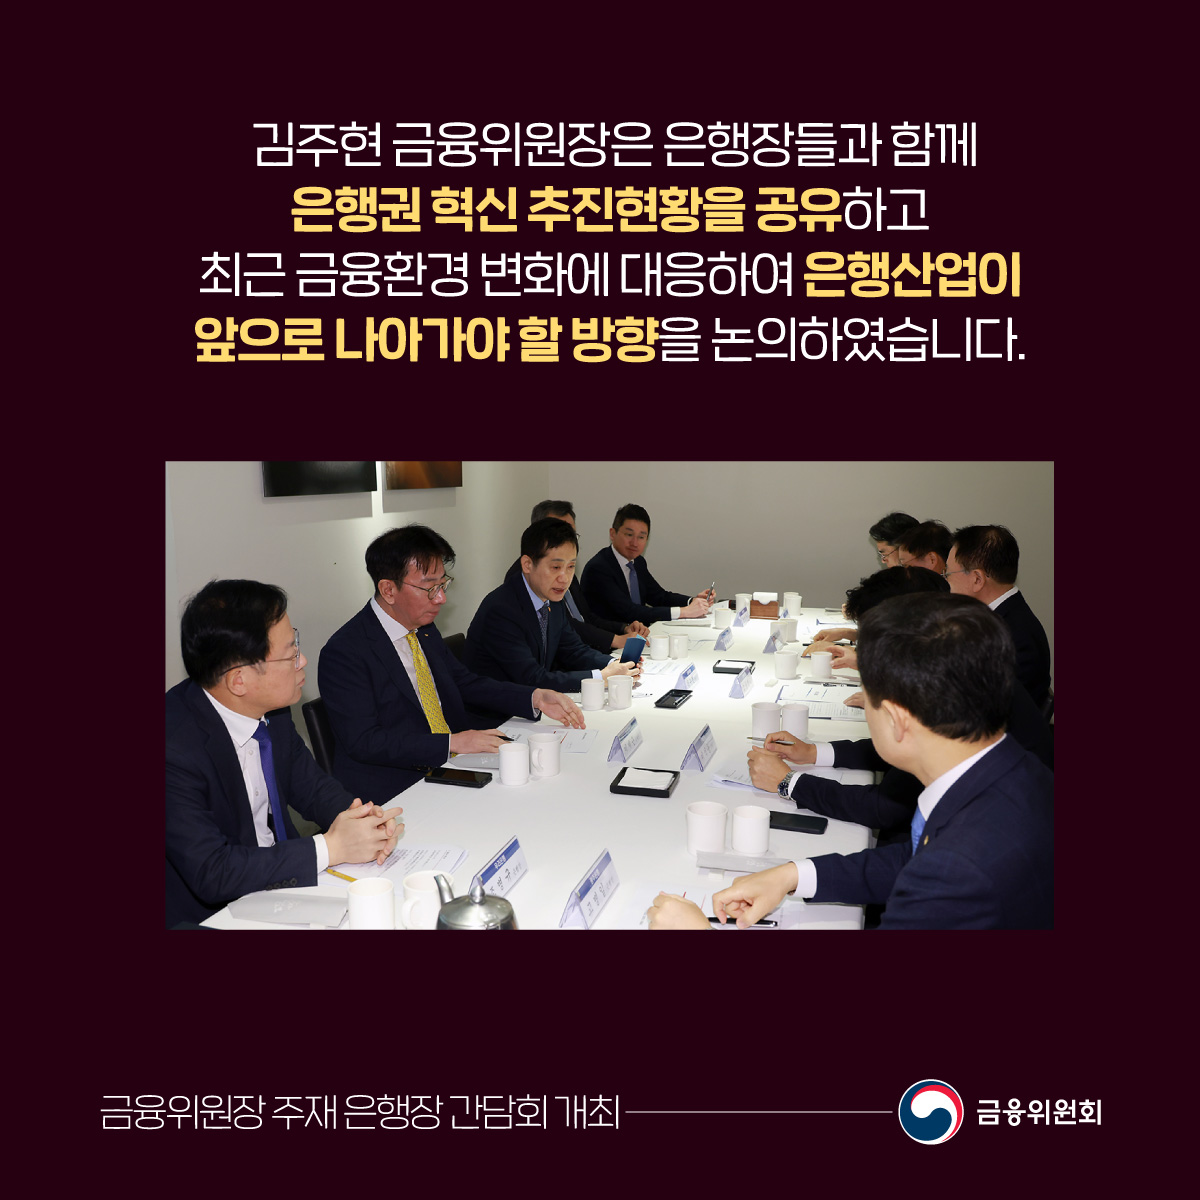 김주현 금융위원장은 은행장들과 함께 은행권 혁신 추진현황을 공유하고 최근 금융환경 변화에 대응하여 은행산업이 앞으로 나아가야 할 방향을 논의하였습니다.